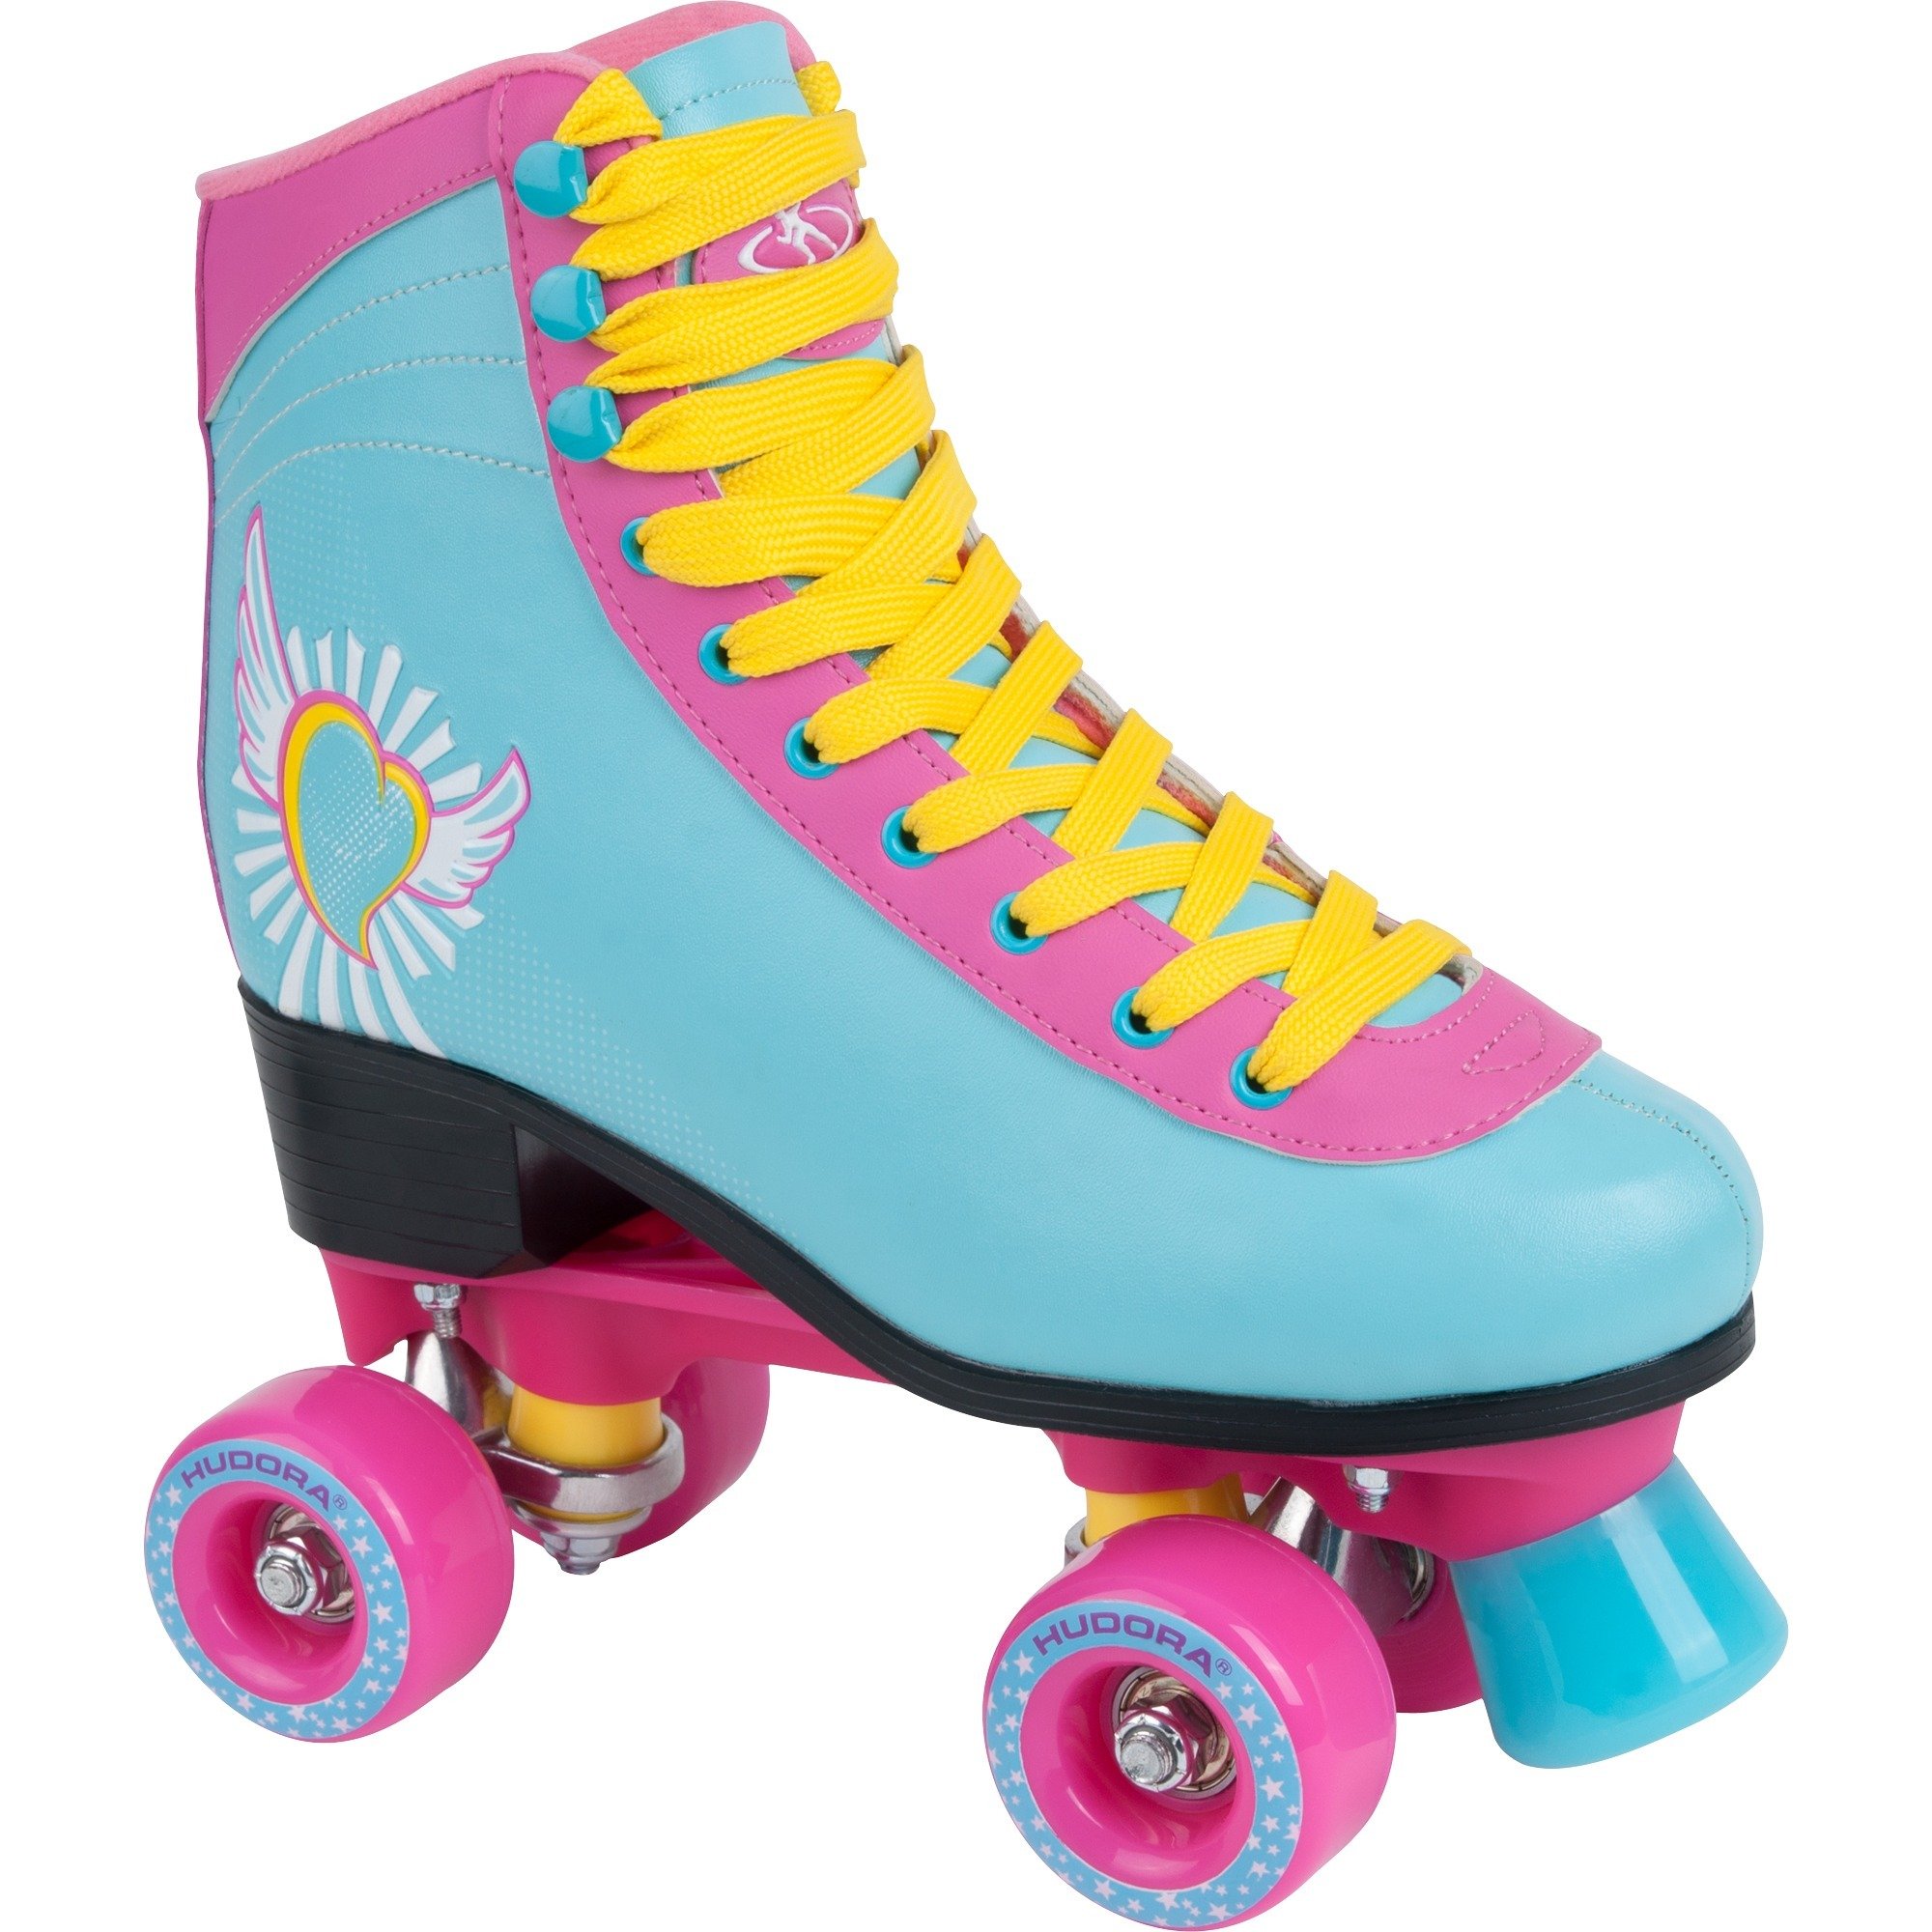 13162, Roller skates